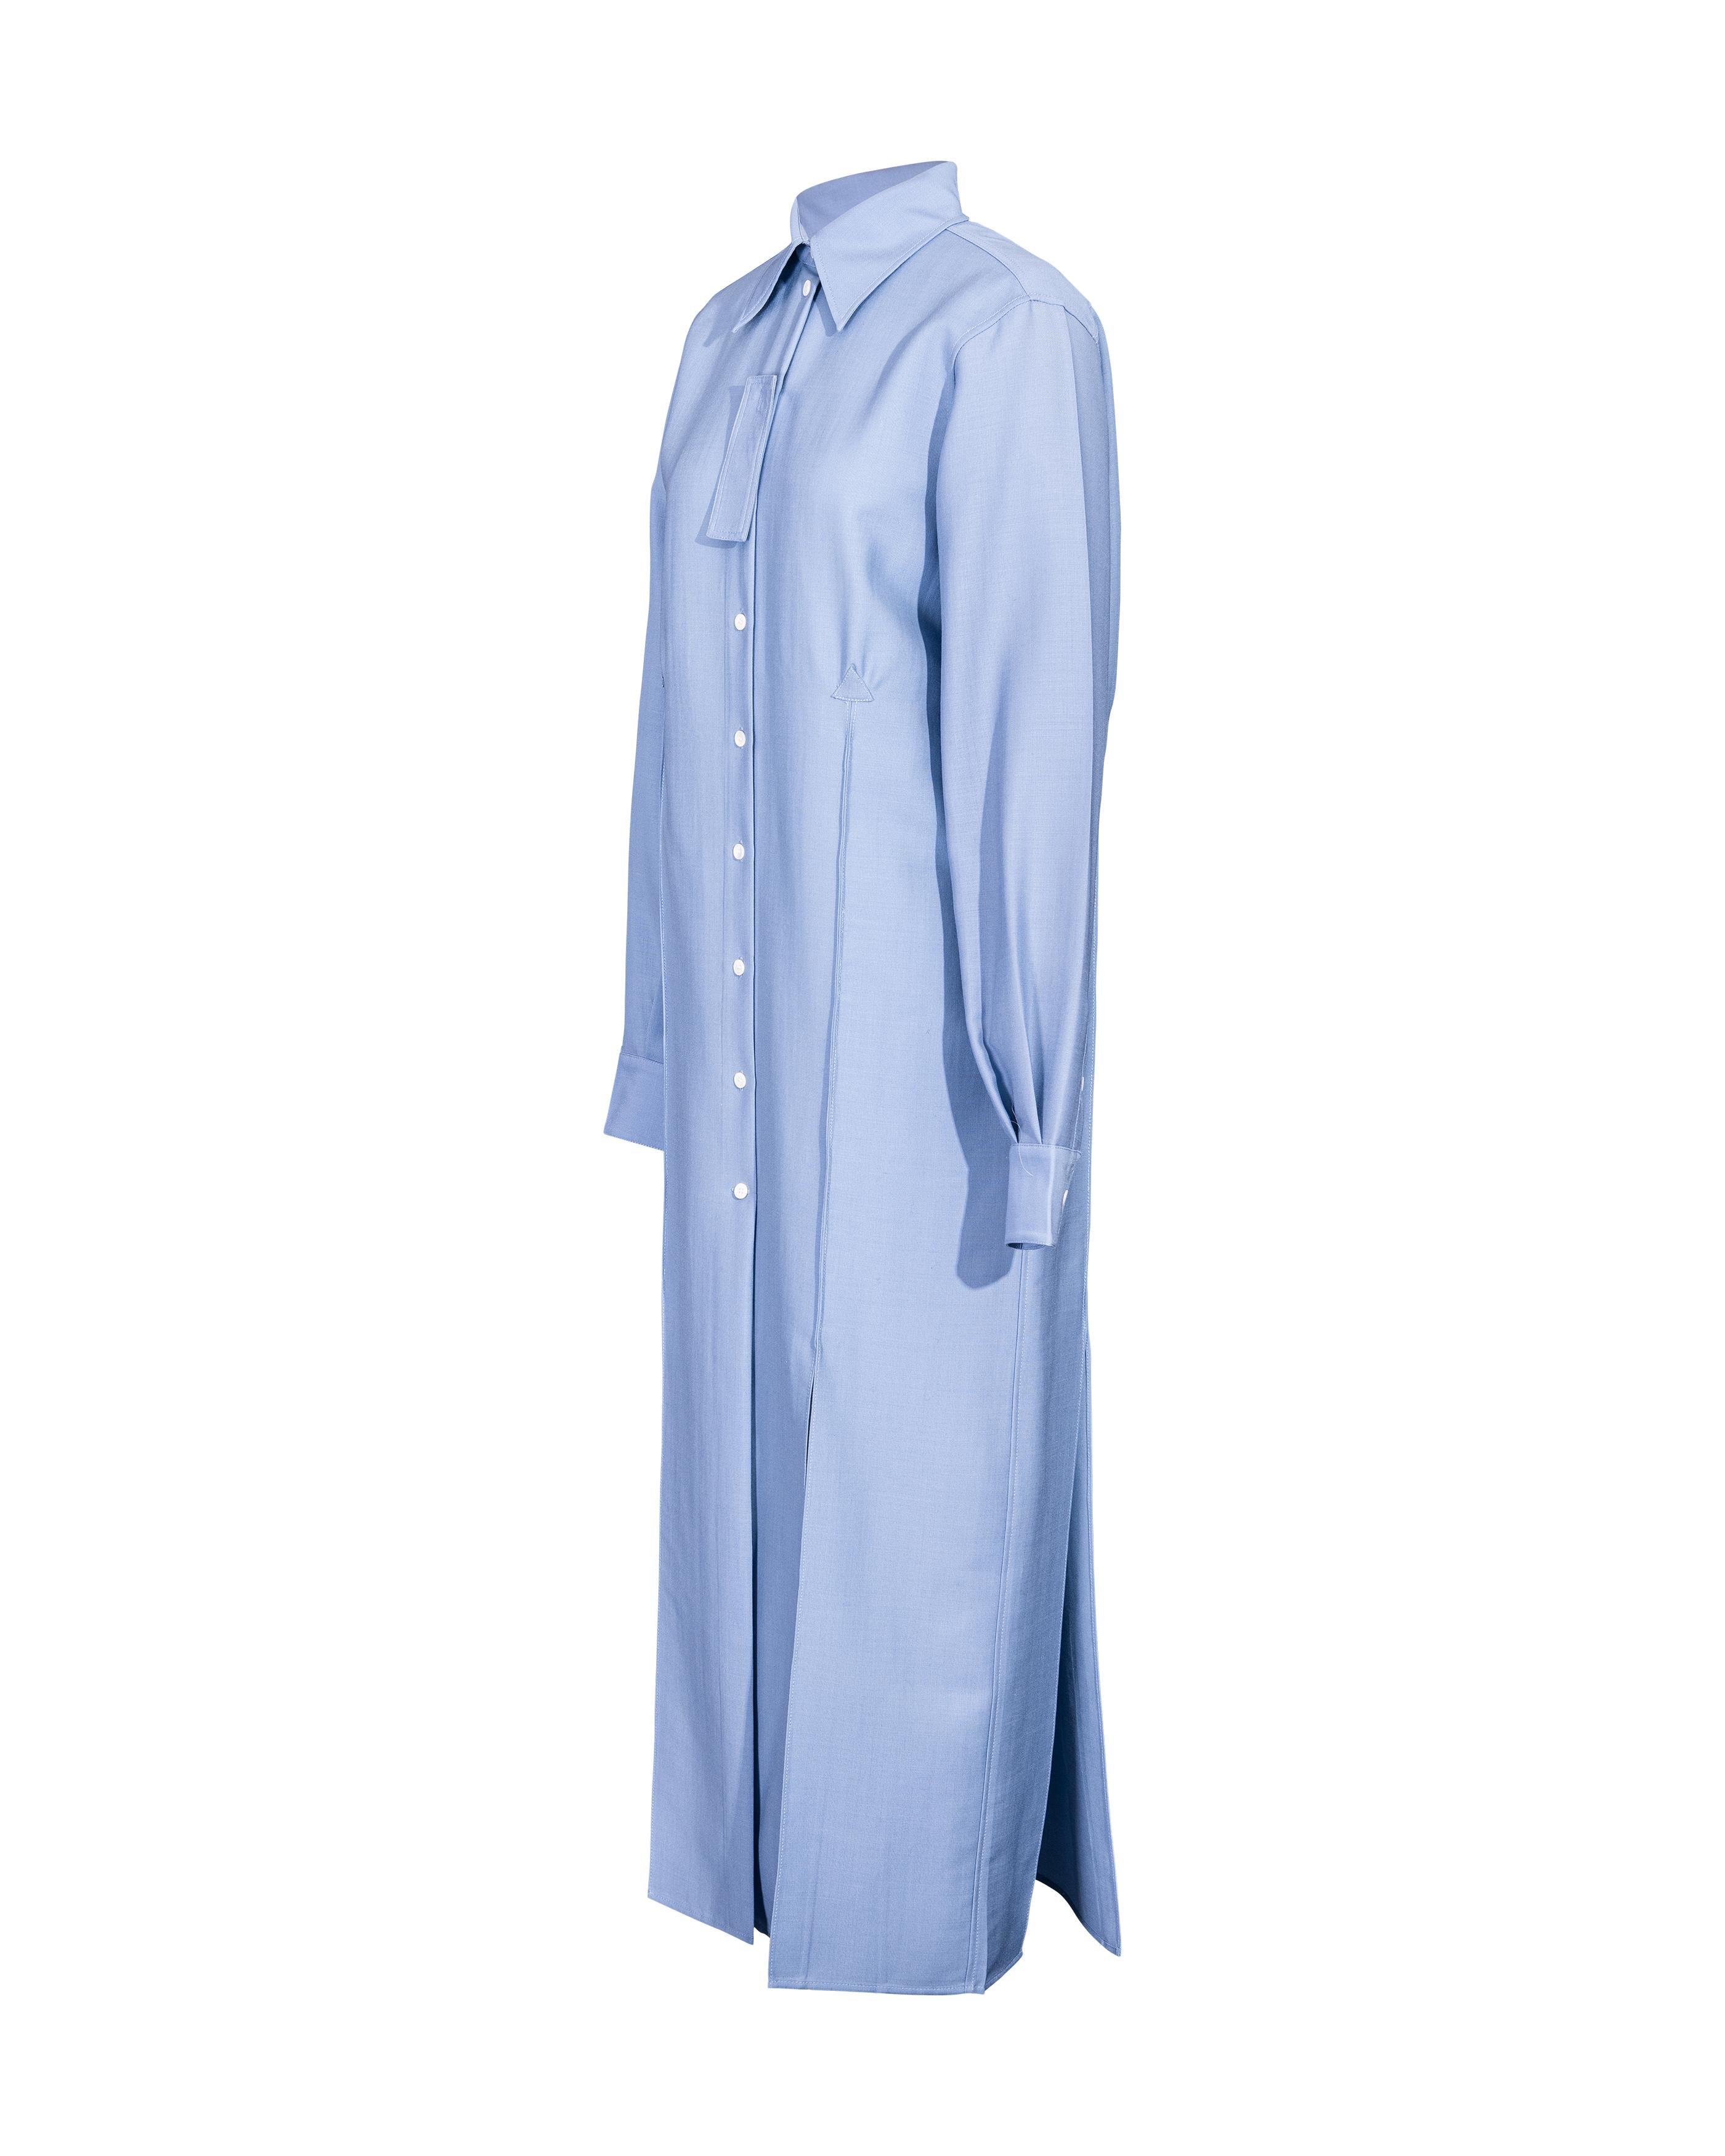 A/W 2017 Céline by Phoebe Philo Button-Up Light Blue Shirt Dress 1